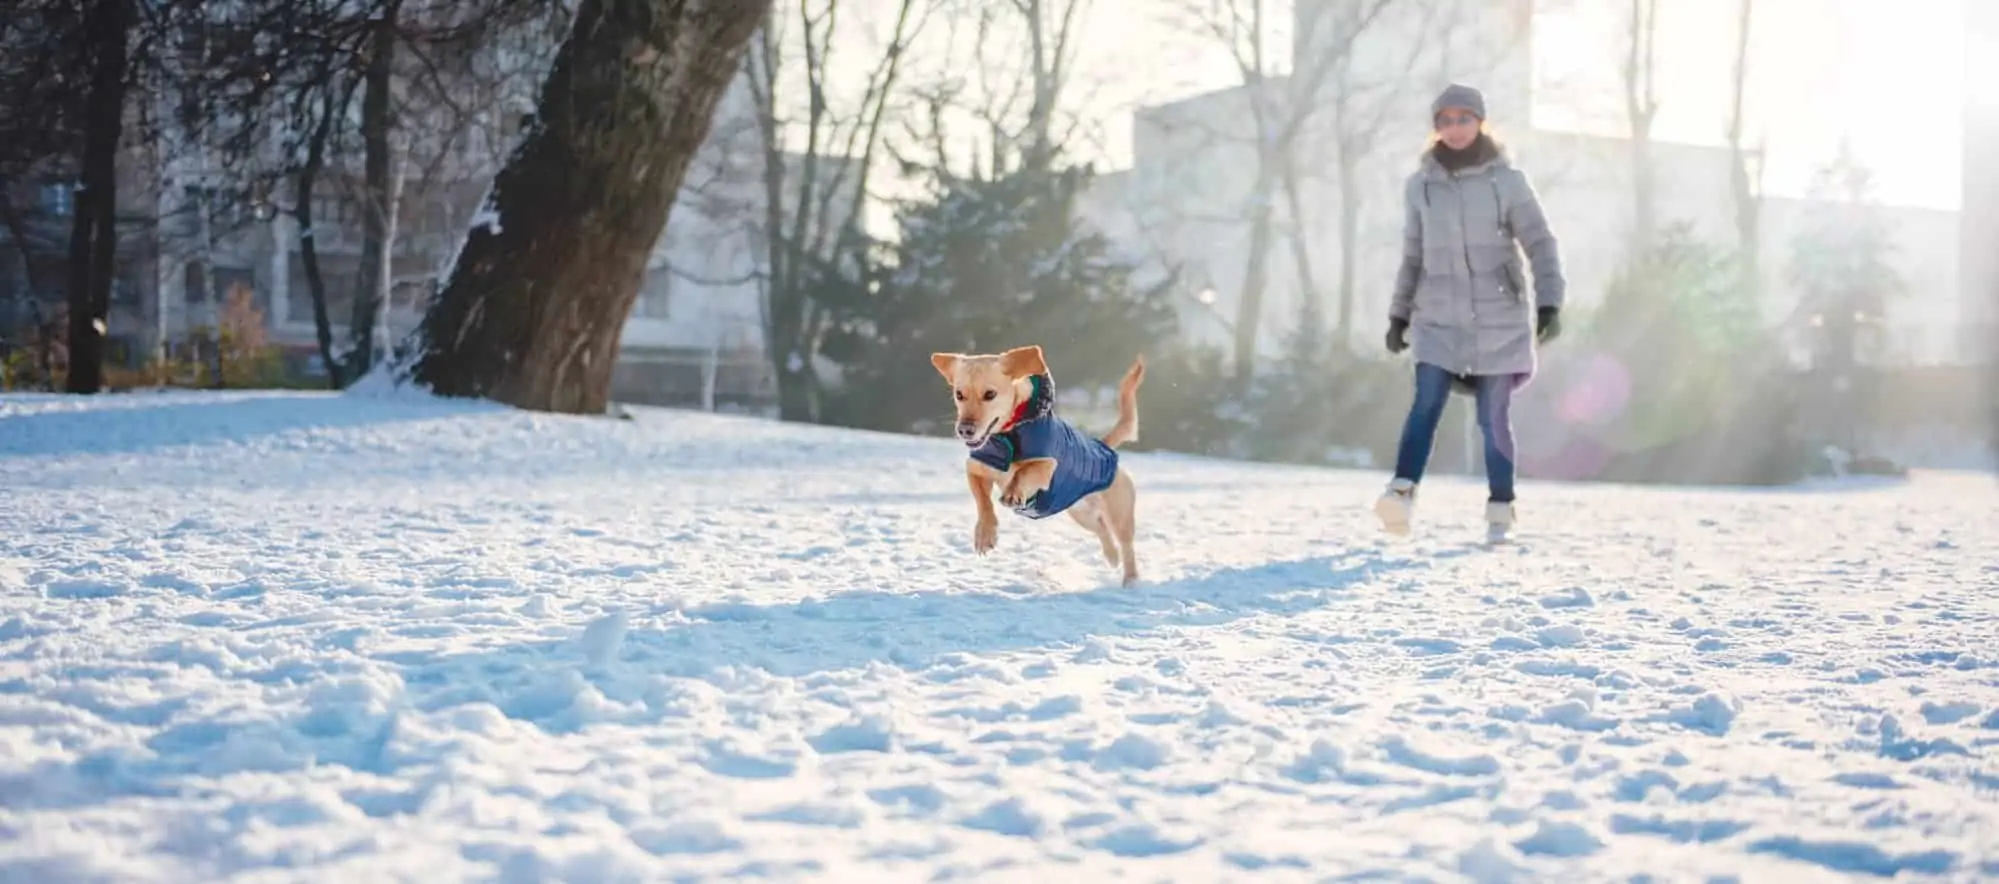 Hund im Winter